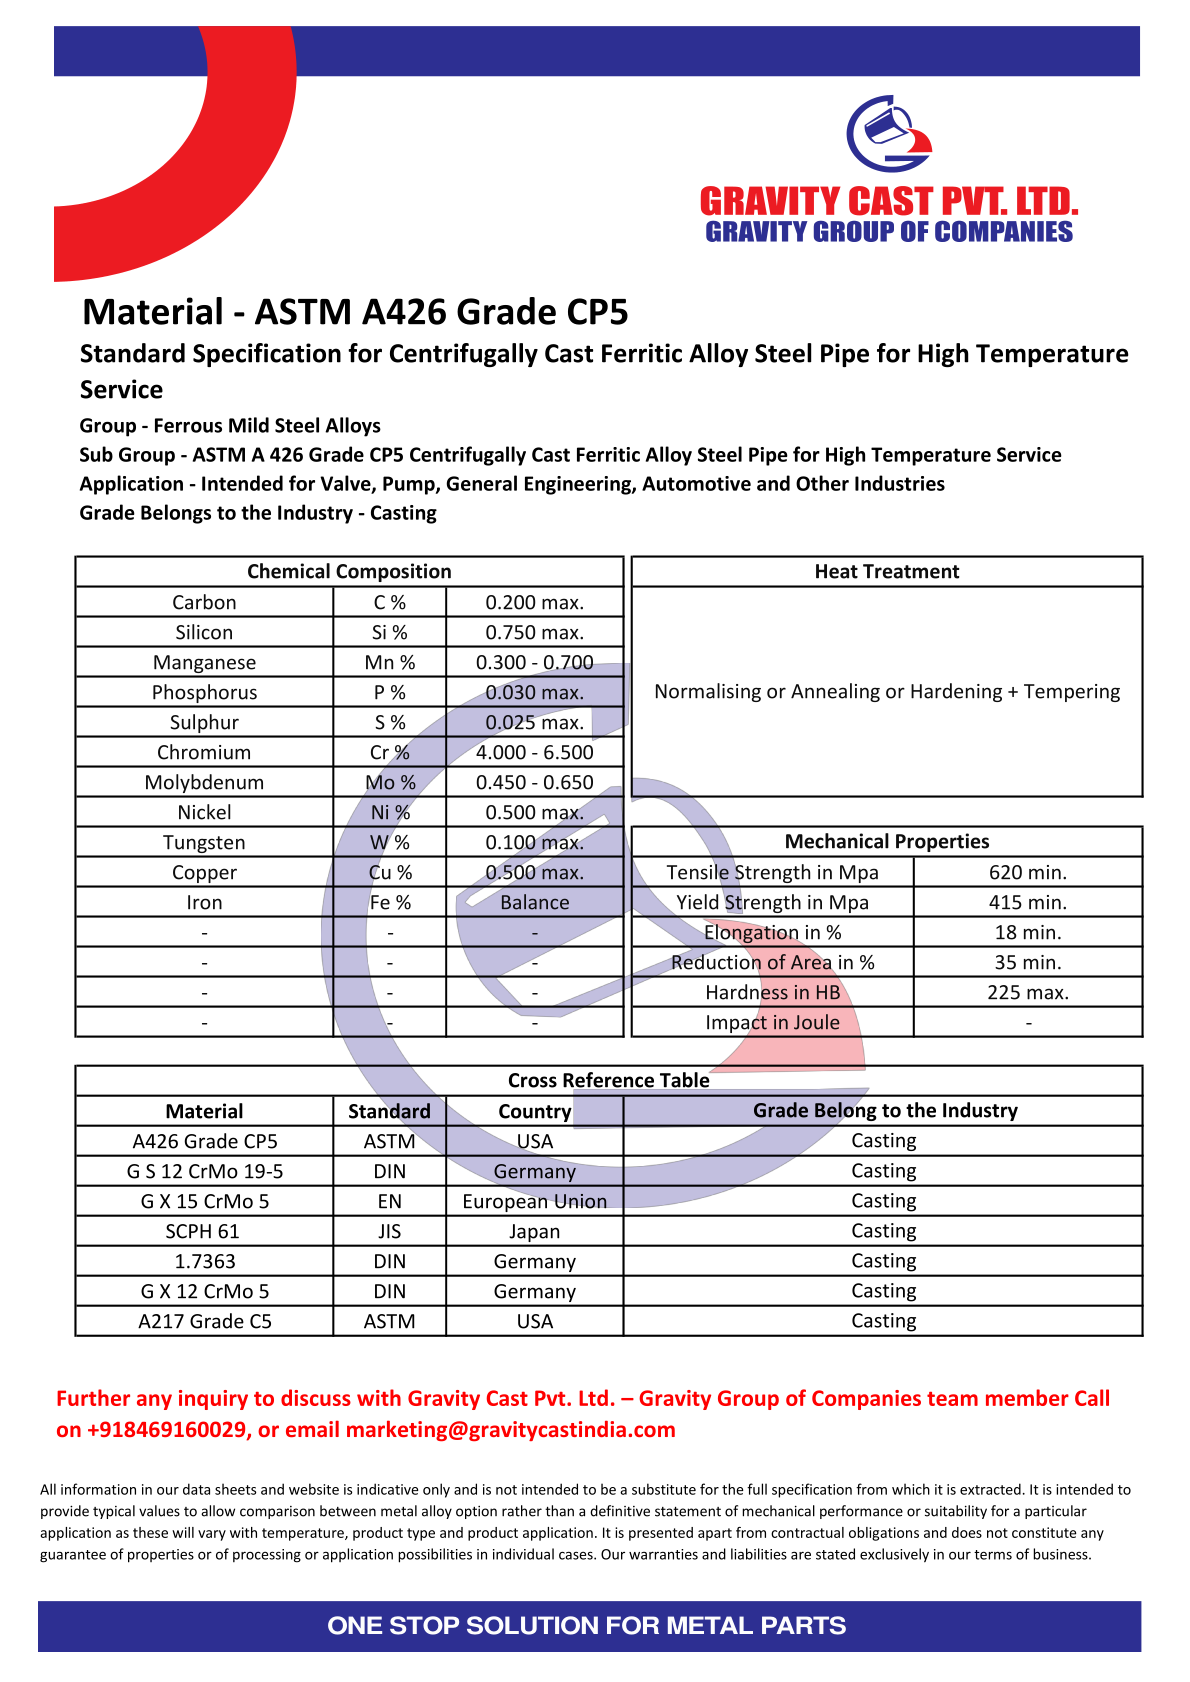 ASTM A426 Grade CP5.pdf